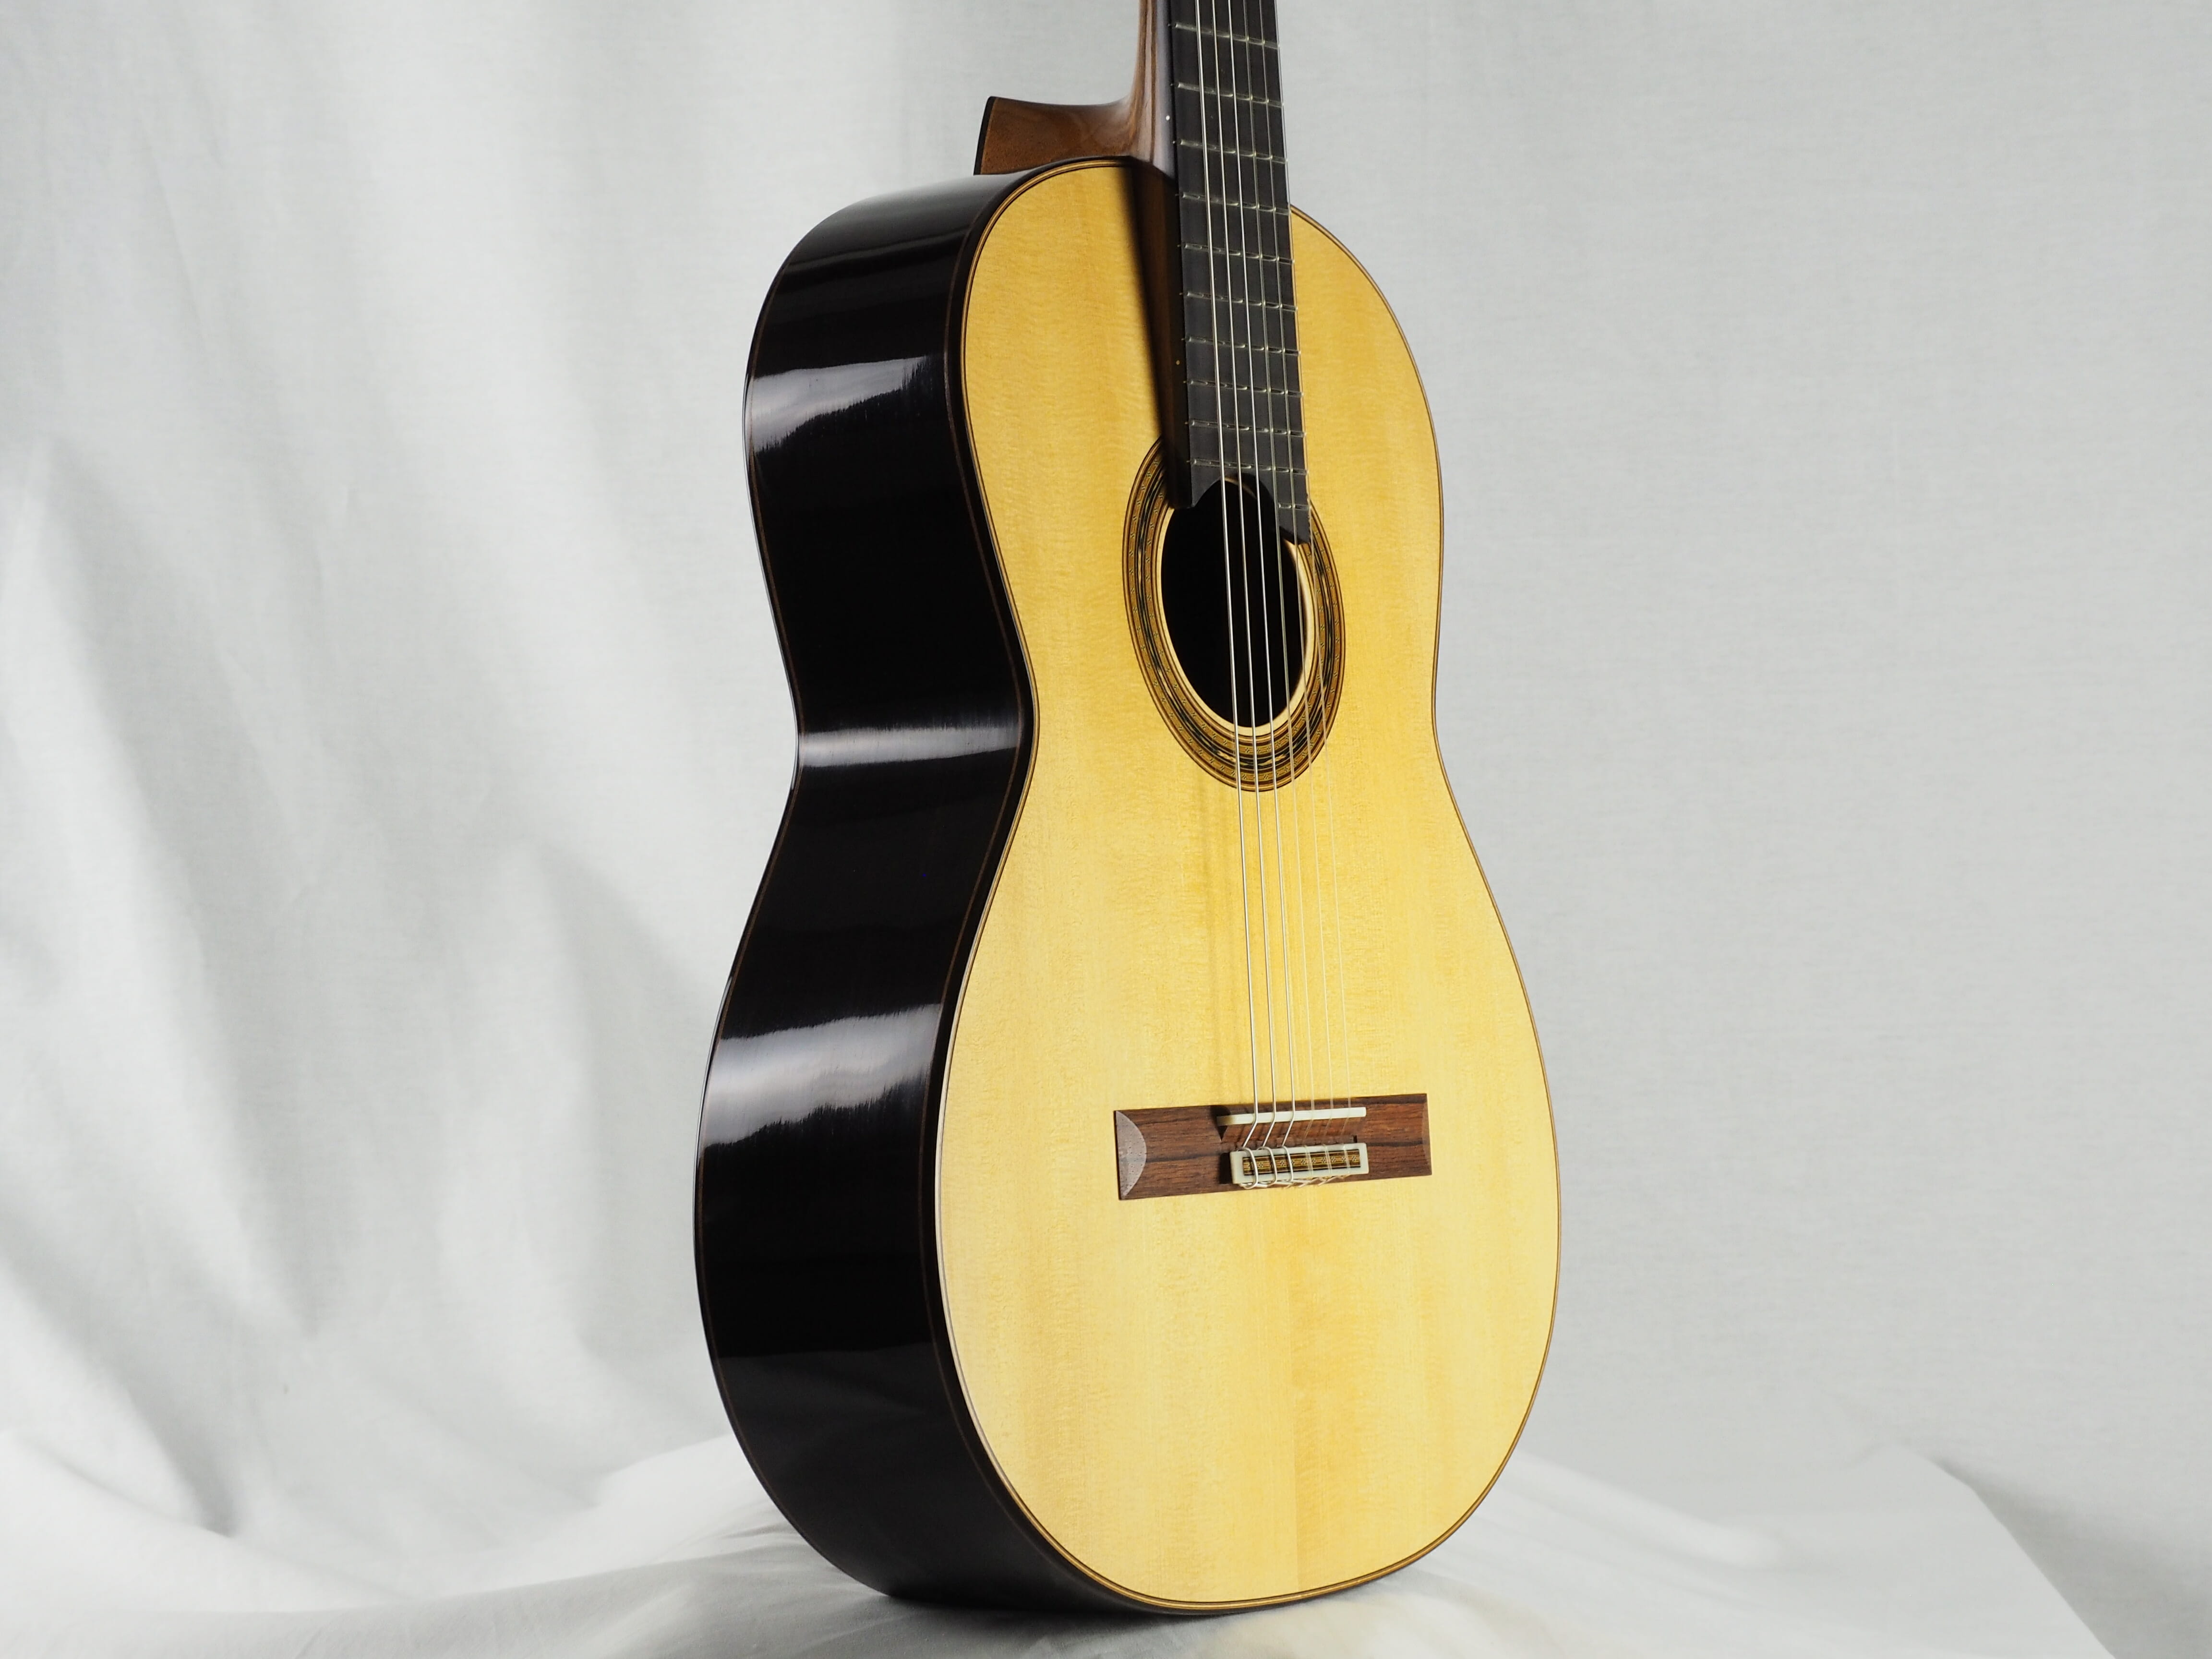 Gregory Byers guitare classique barrage lattice épicéa luthier